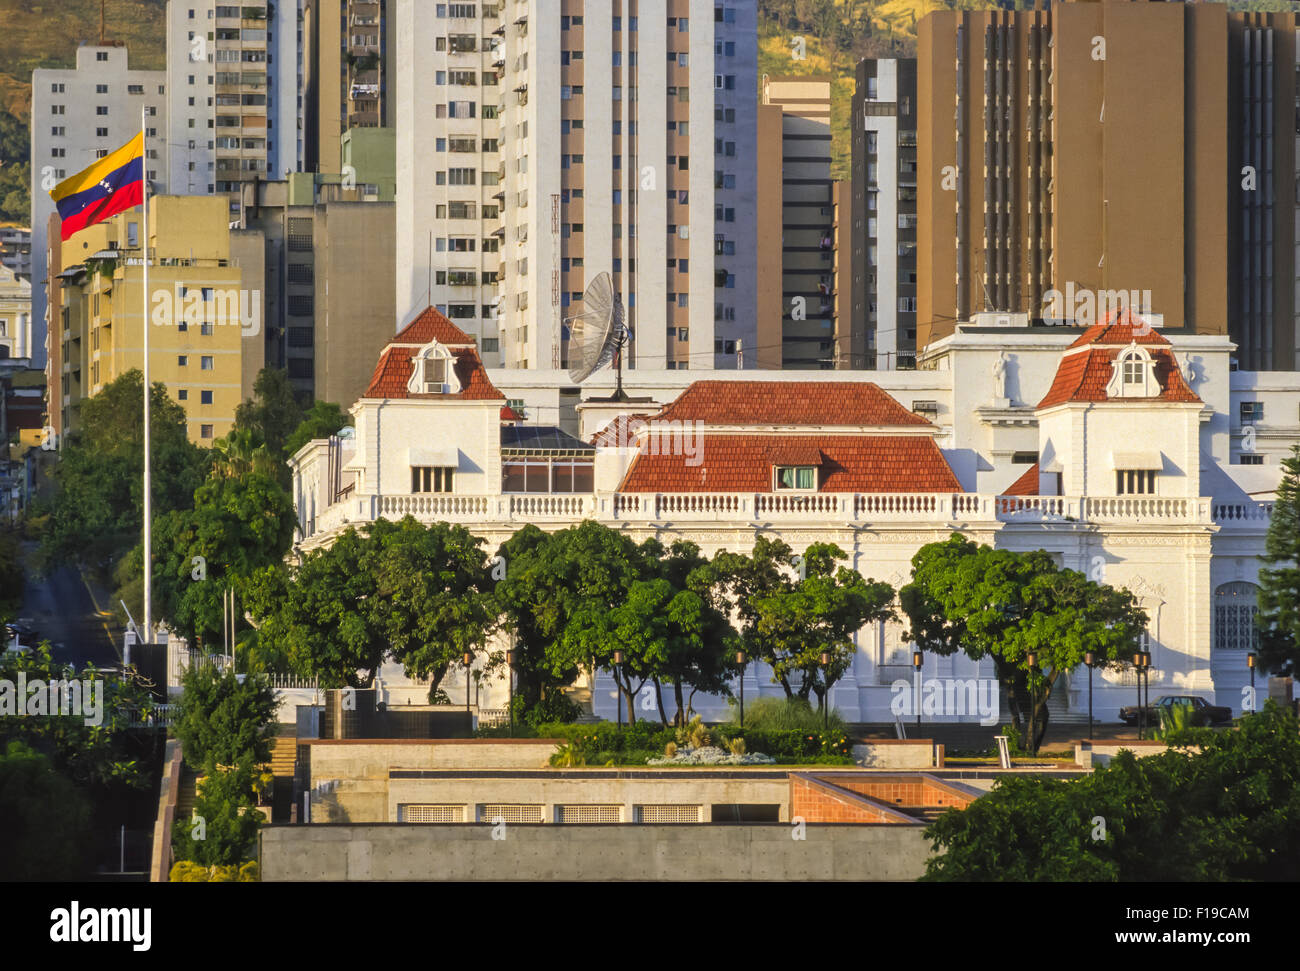 CARACAS, VENEZUELA - Miraflores, presidential palace in downtown Caracas, 1988 Stock Photo